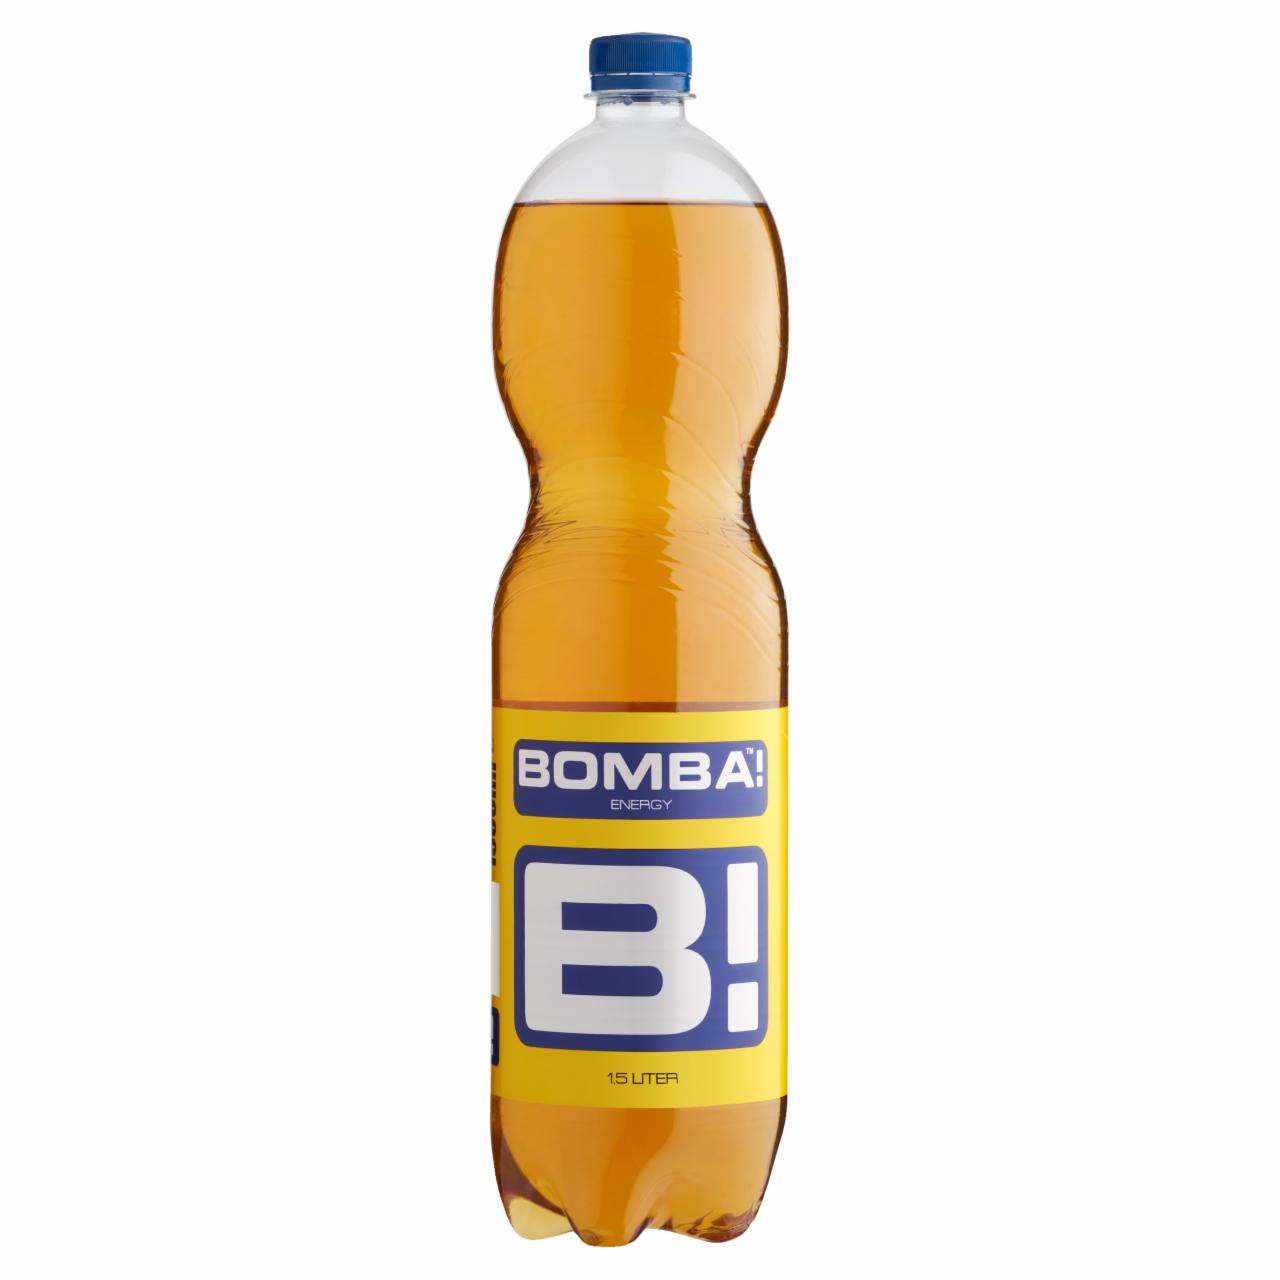 Képek - BOMBA! koffeintartalmú, tutti-frutti ízű szénsavas ital cukorral és édesítőszerrel 1,5 l